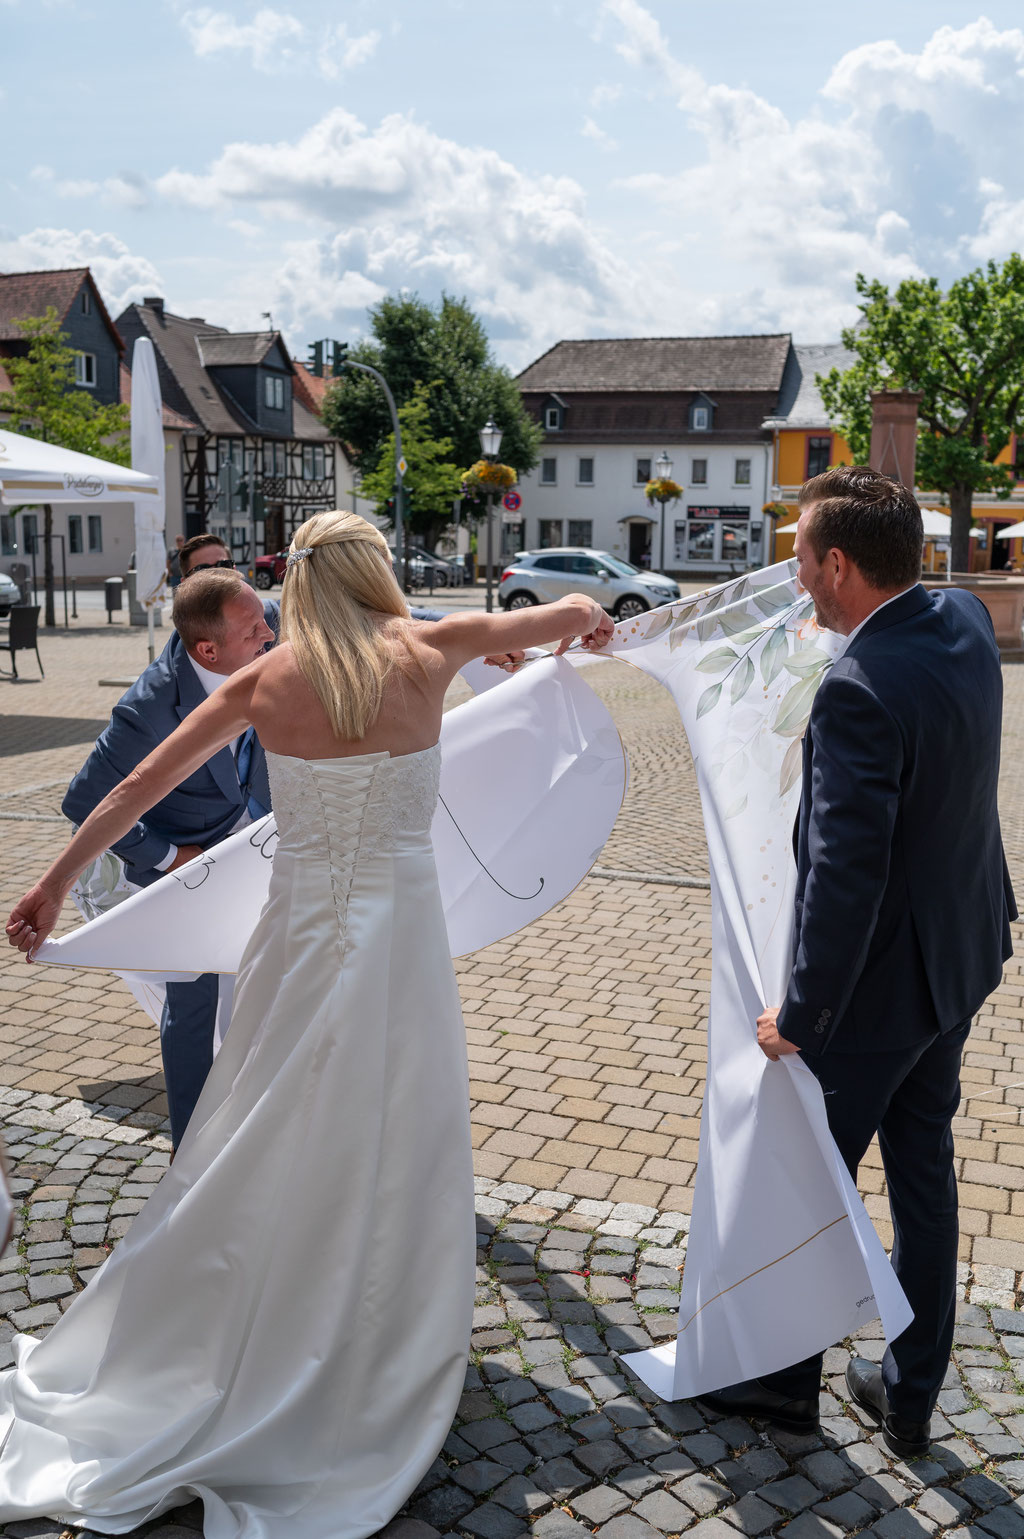 Standesamtliche Trauung in der Hugenottenkirche Usingen - Ein Hochzeitsherz zum Start in die Ehe